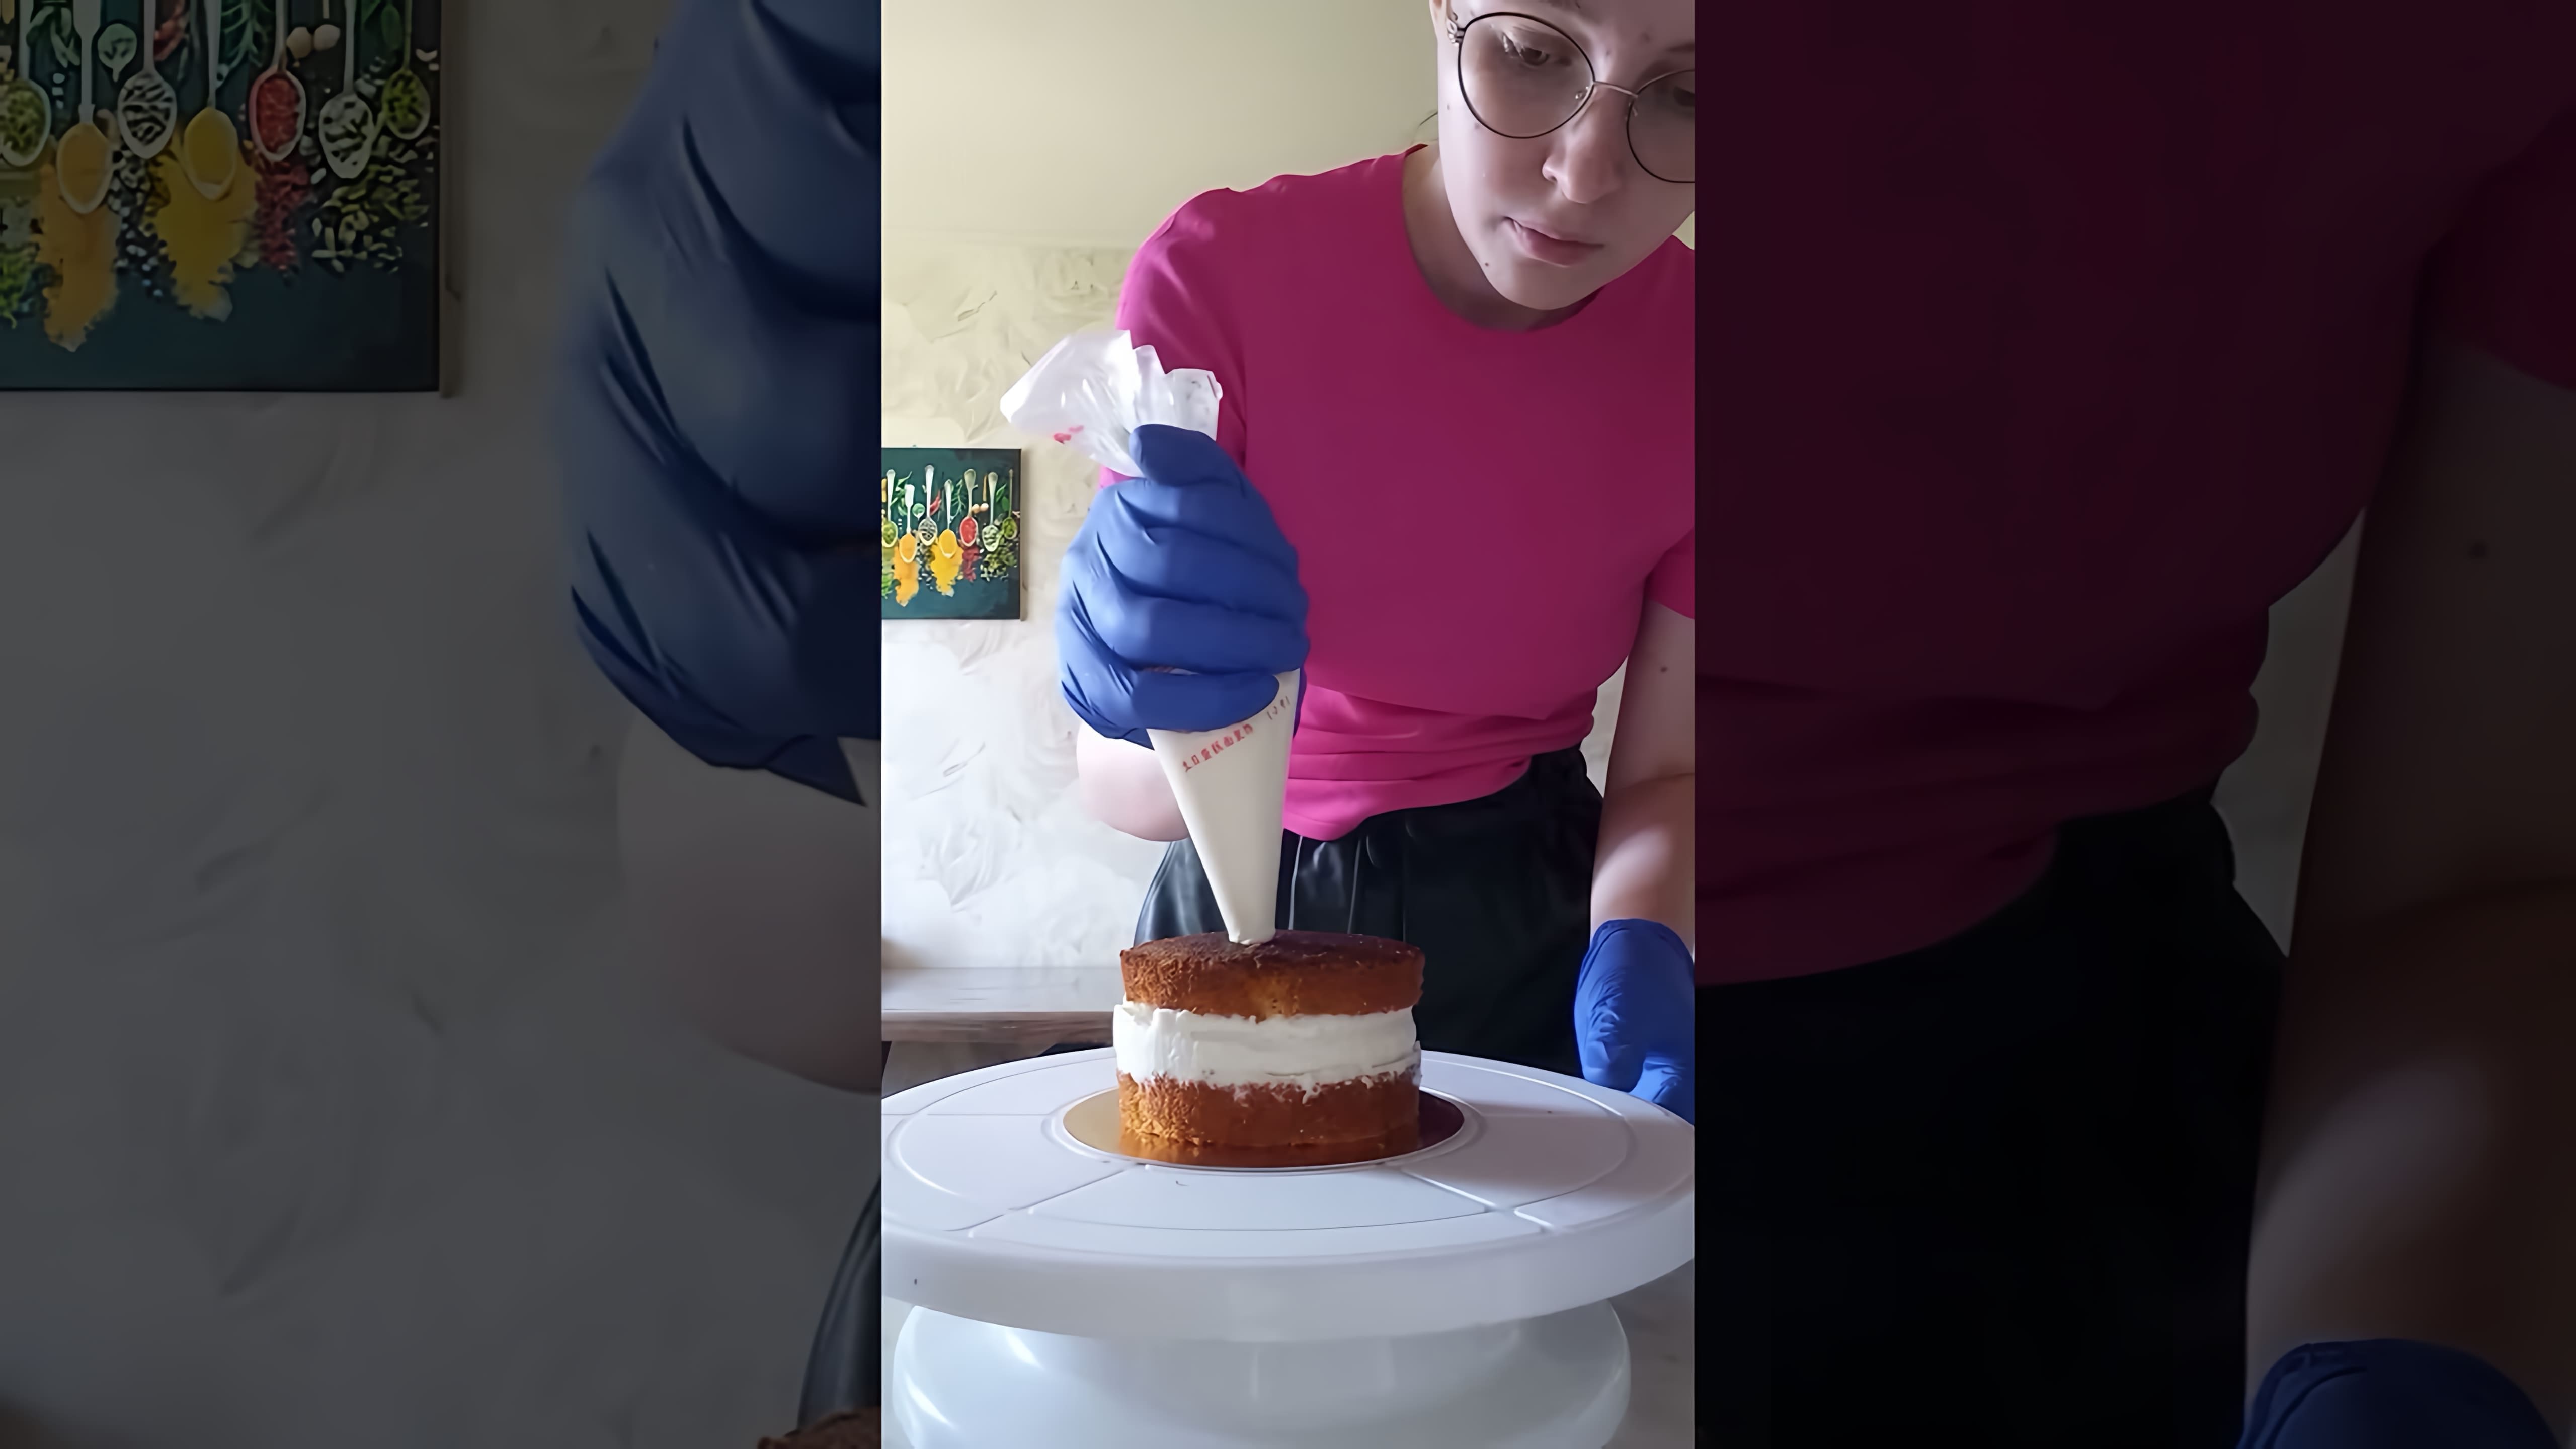 "Бенто торт "Клубника со сливками" - видео-ролик о создании оригинального десерта"

В этом видео-ролике вы увидите, как создается бенто торт "Клубника со сливками"